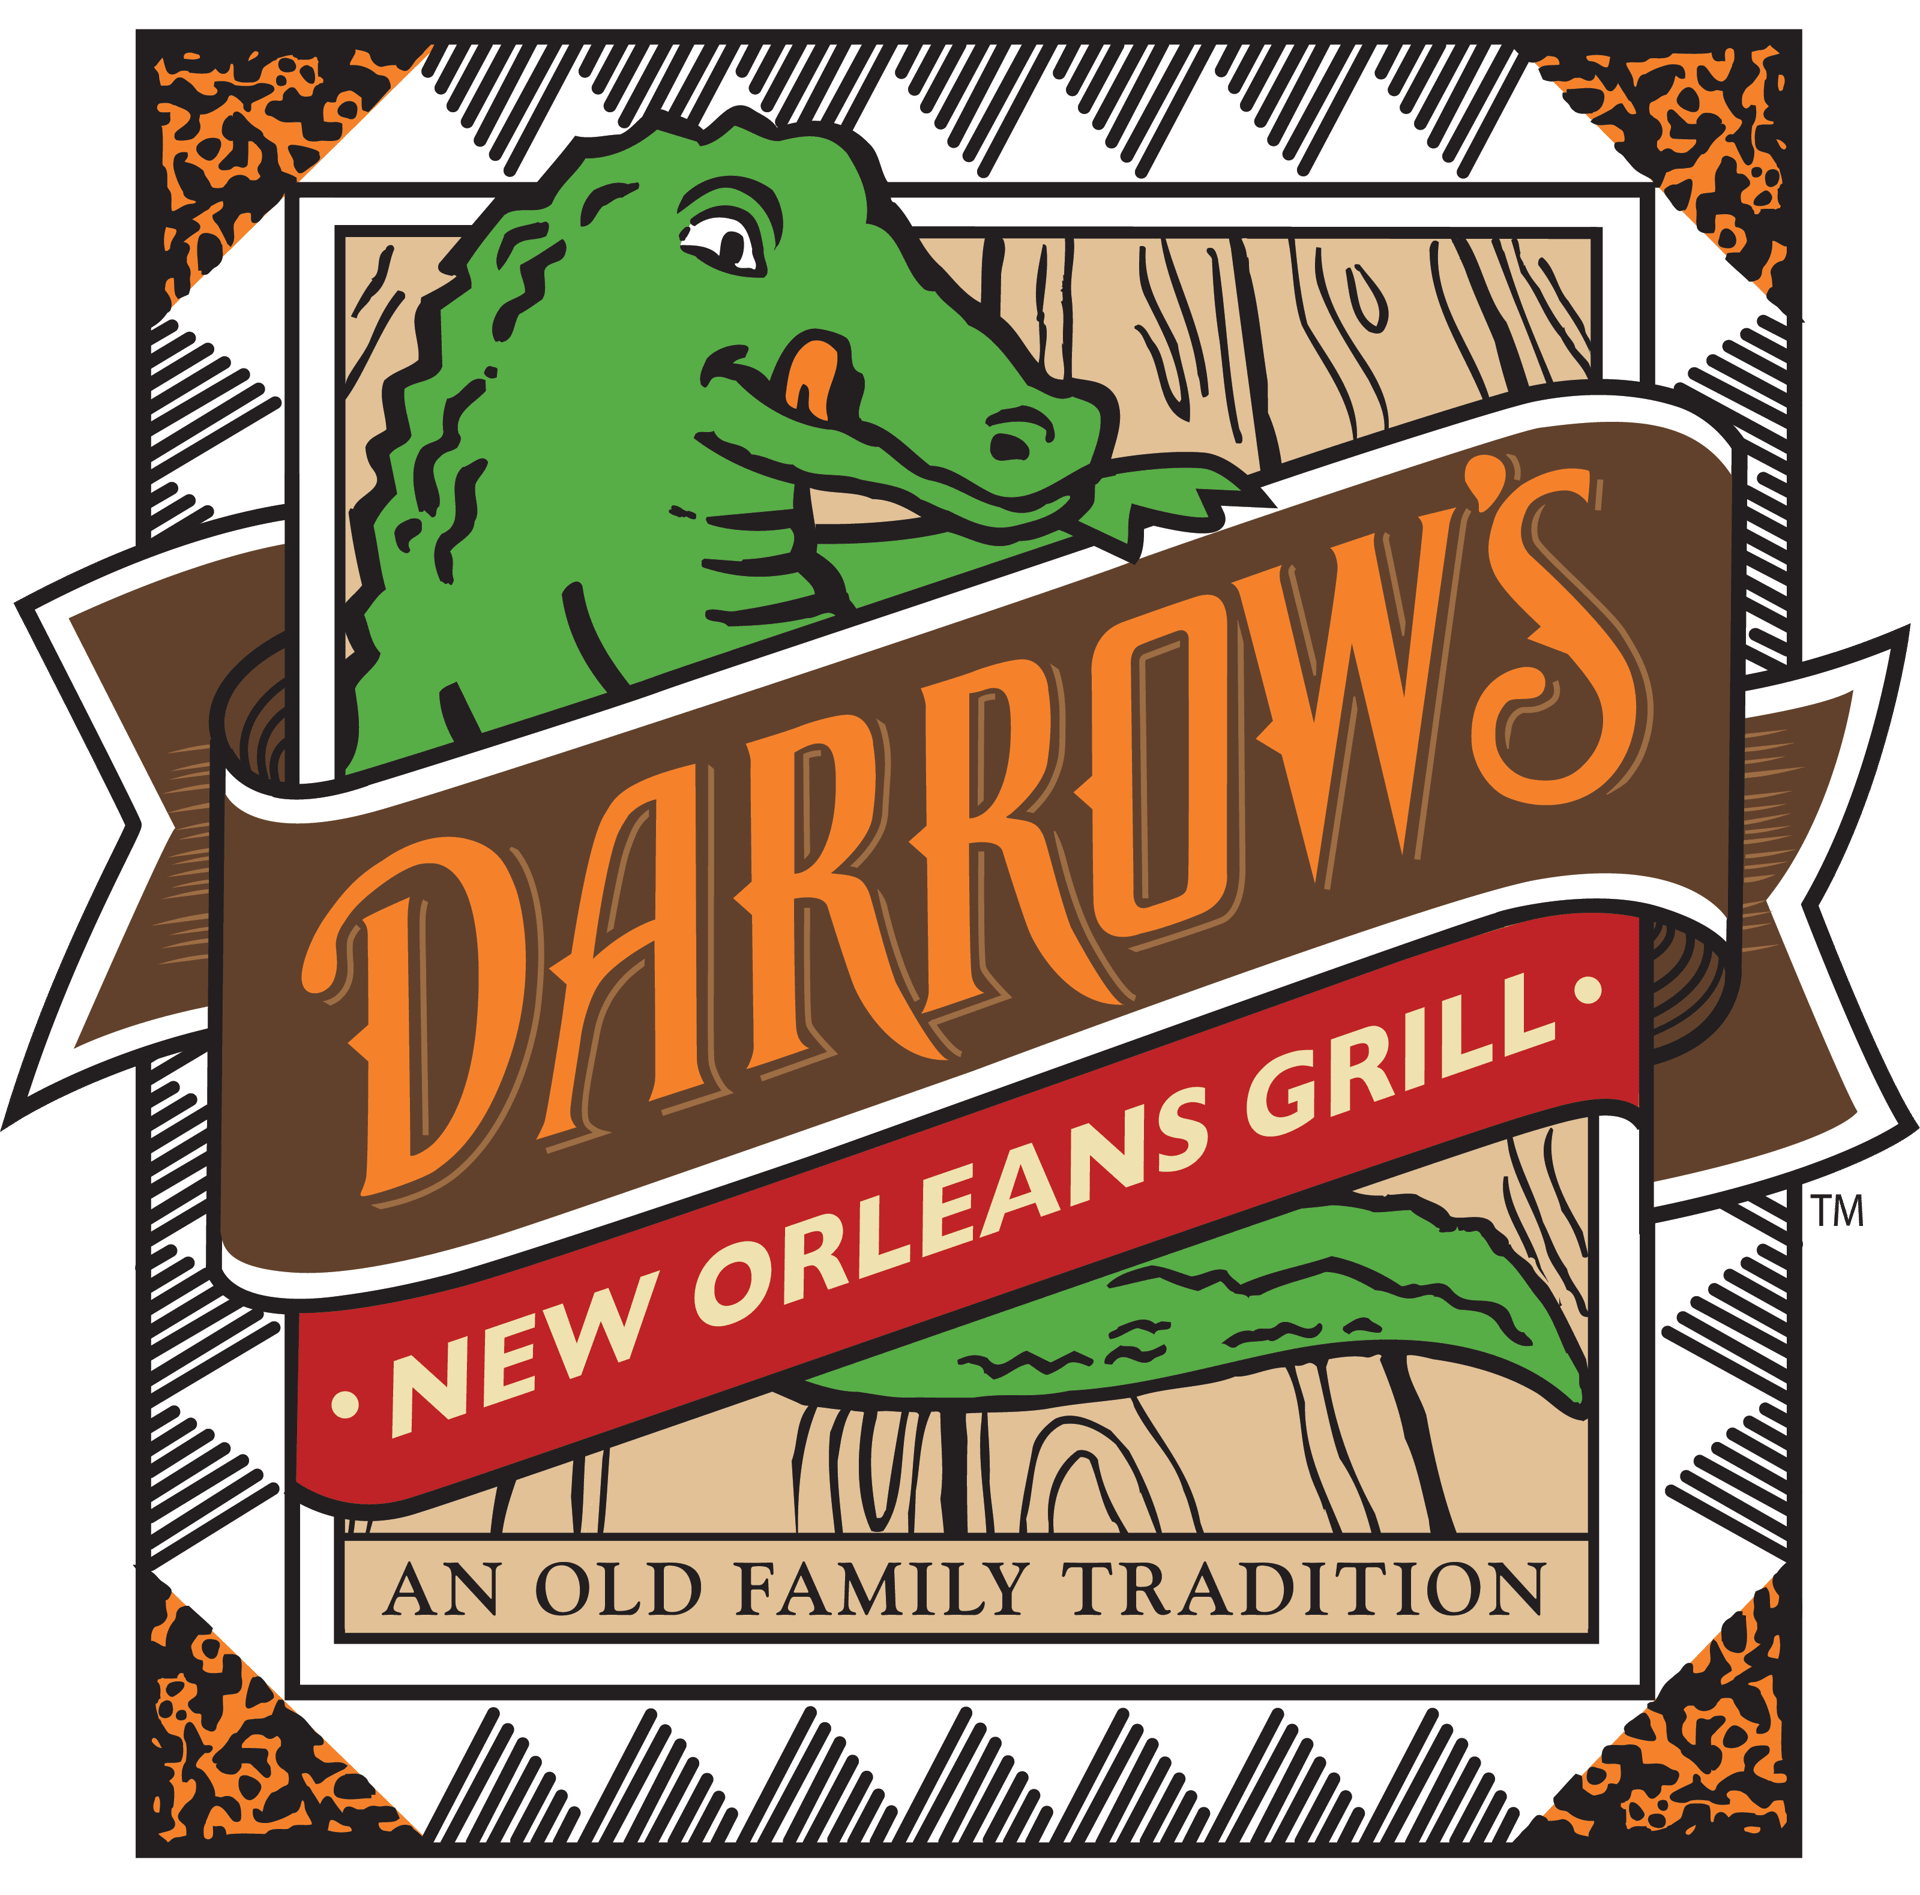 Darrow's logo